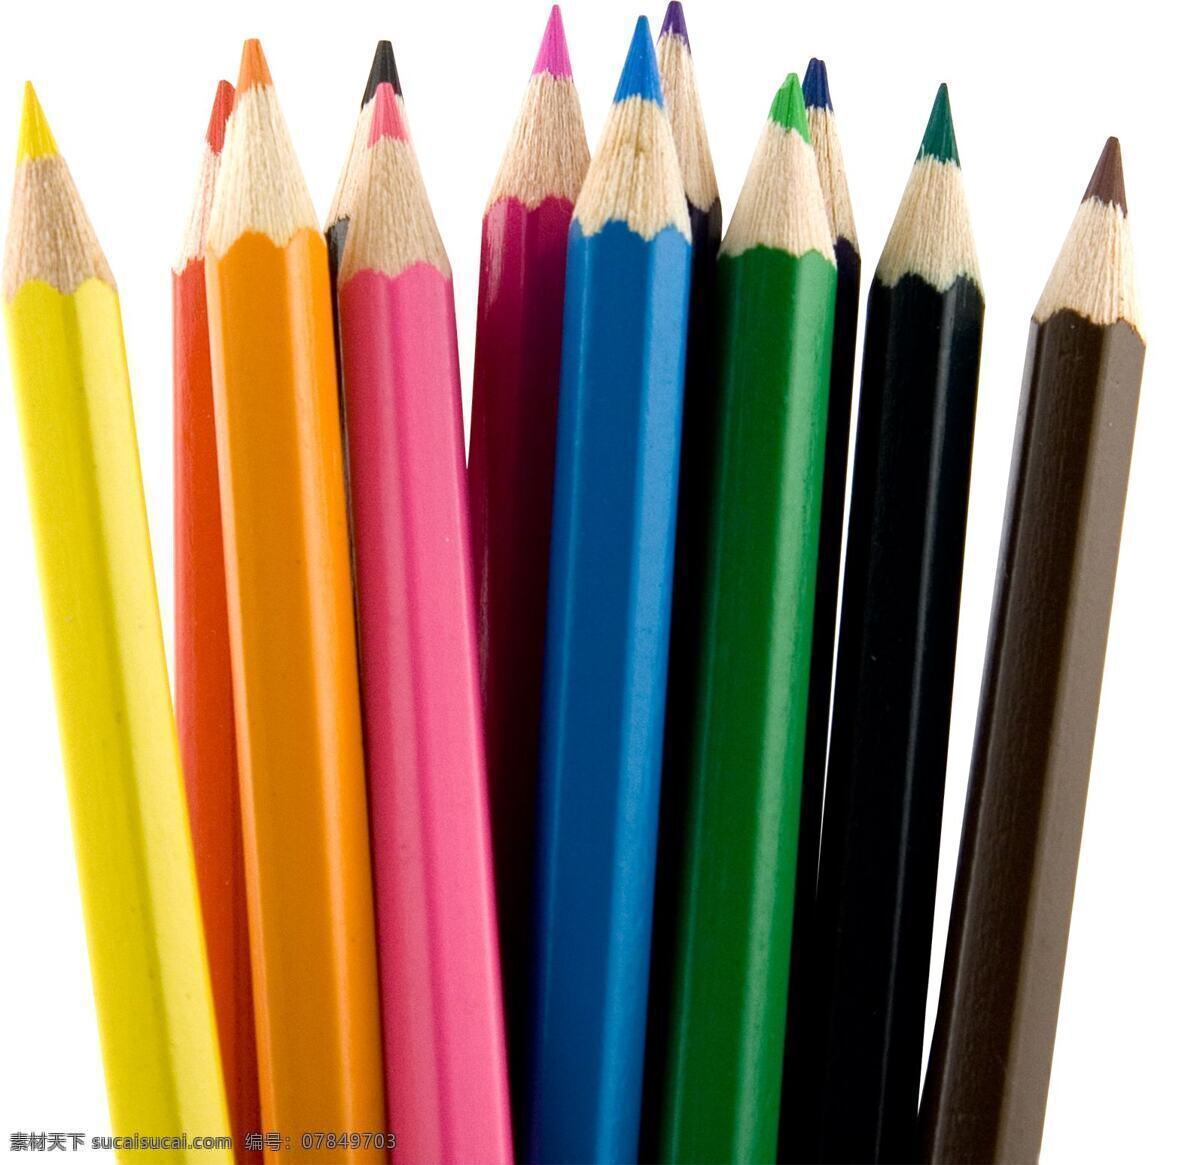 一打 彩色 铅笔 笔 绘画笔 彩色铅笔 文具 学习用品 办公学习 生活百科